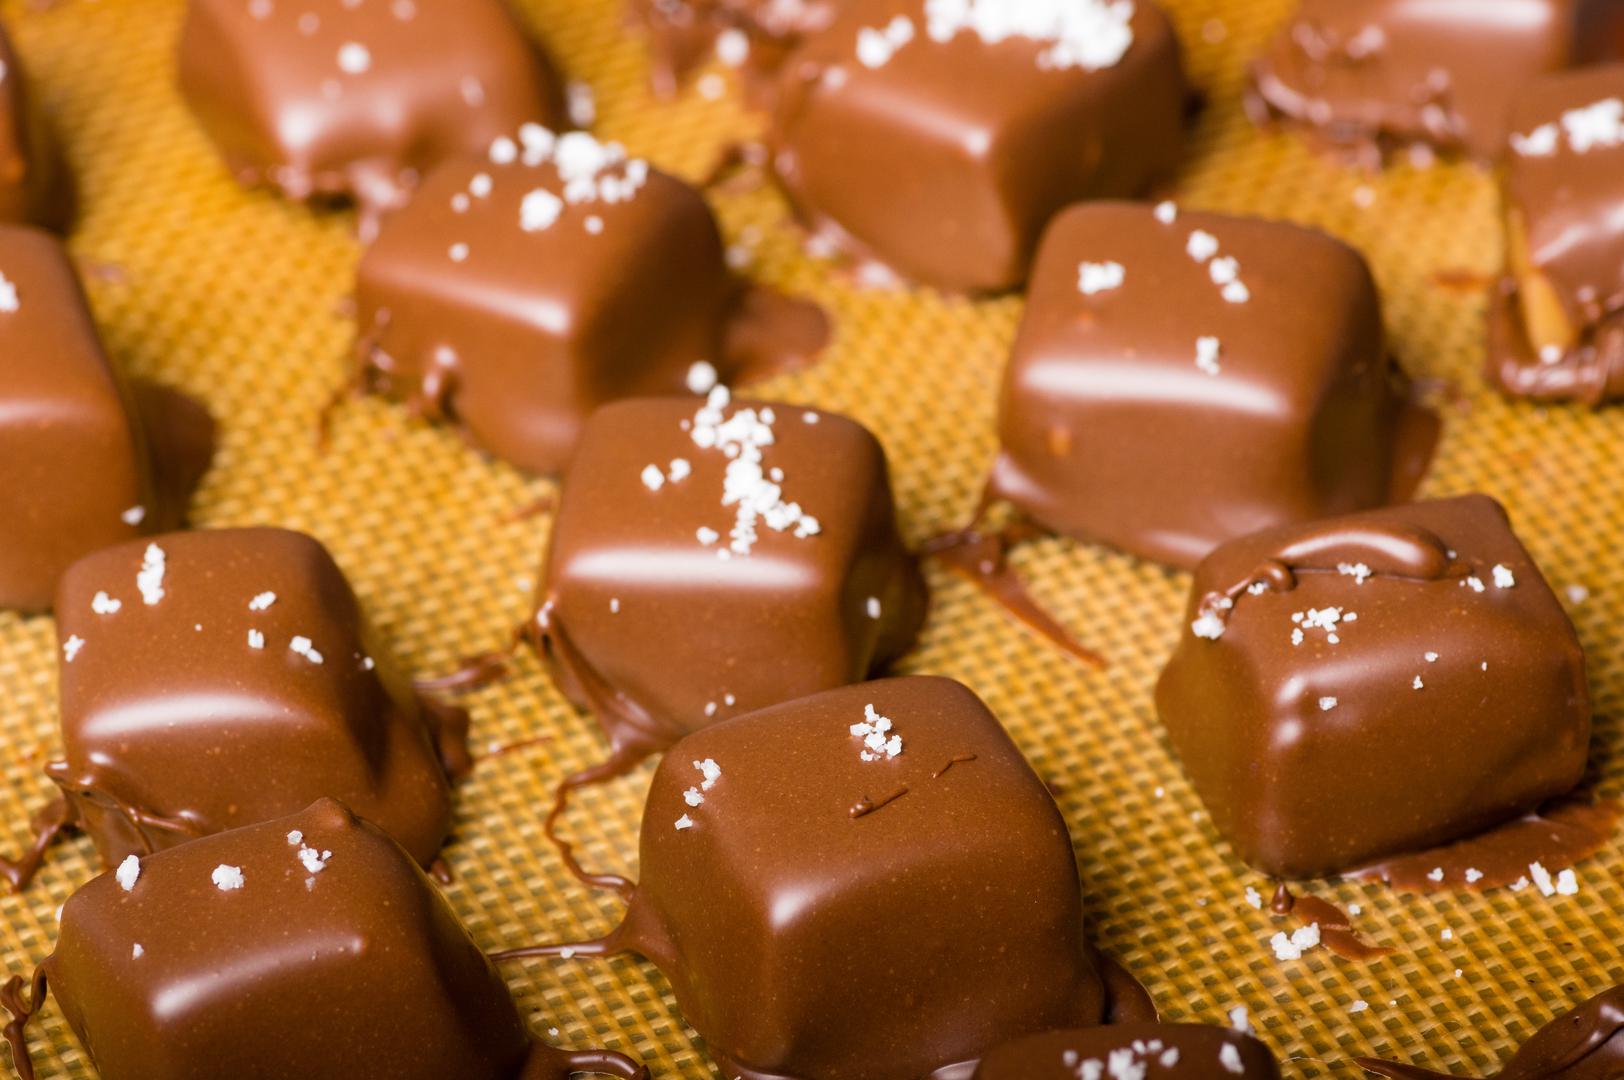 Rak (22. lipnja - 22. srpnja) – Čokolada s karamelom i soli:  Rak uživa u jednostavnim životnim zadovoljstvima. 'Čokolade s morskom soli i karamelom nude skladnu ravnotežu slatkog i slanog, što je idealno za Rakovu dubinu emocija i kompleksnost', objašnjava Rodriguez. Morska sol također odražava njihovu povezanost s elementom vode.